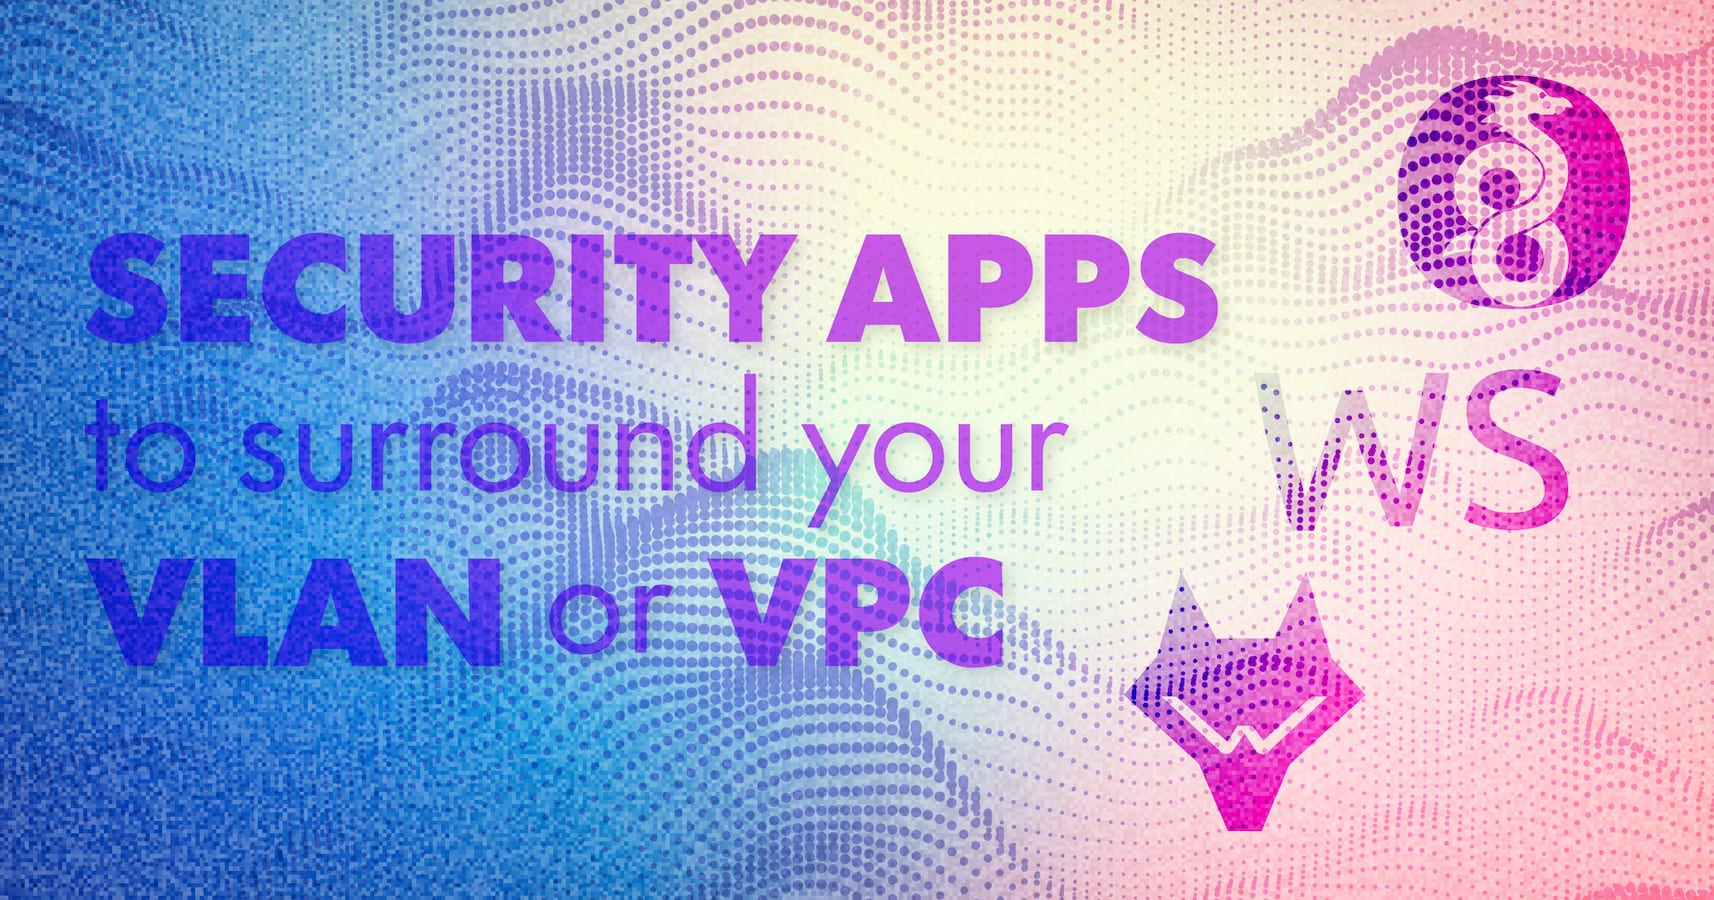 VLAN や VPC を保護するセキュリティアプリ